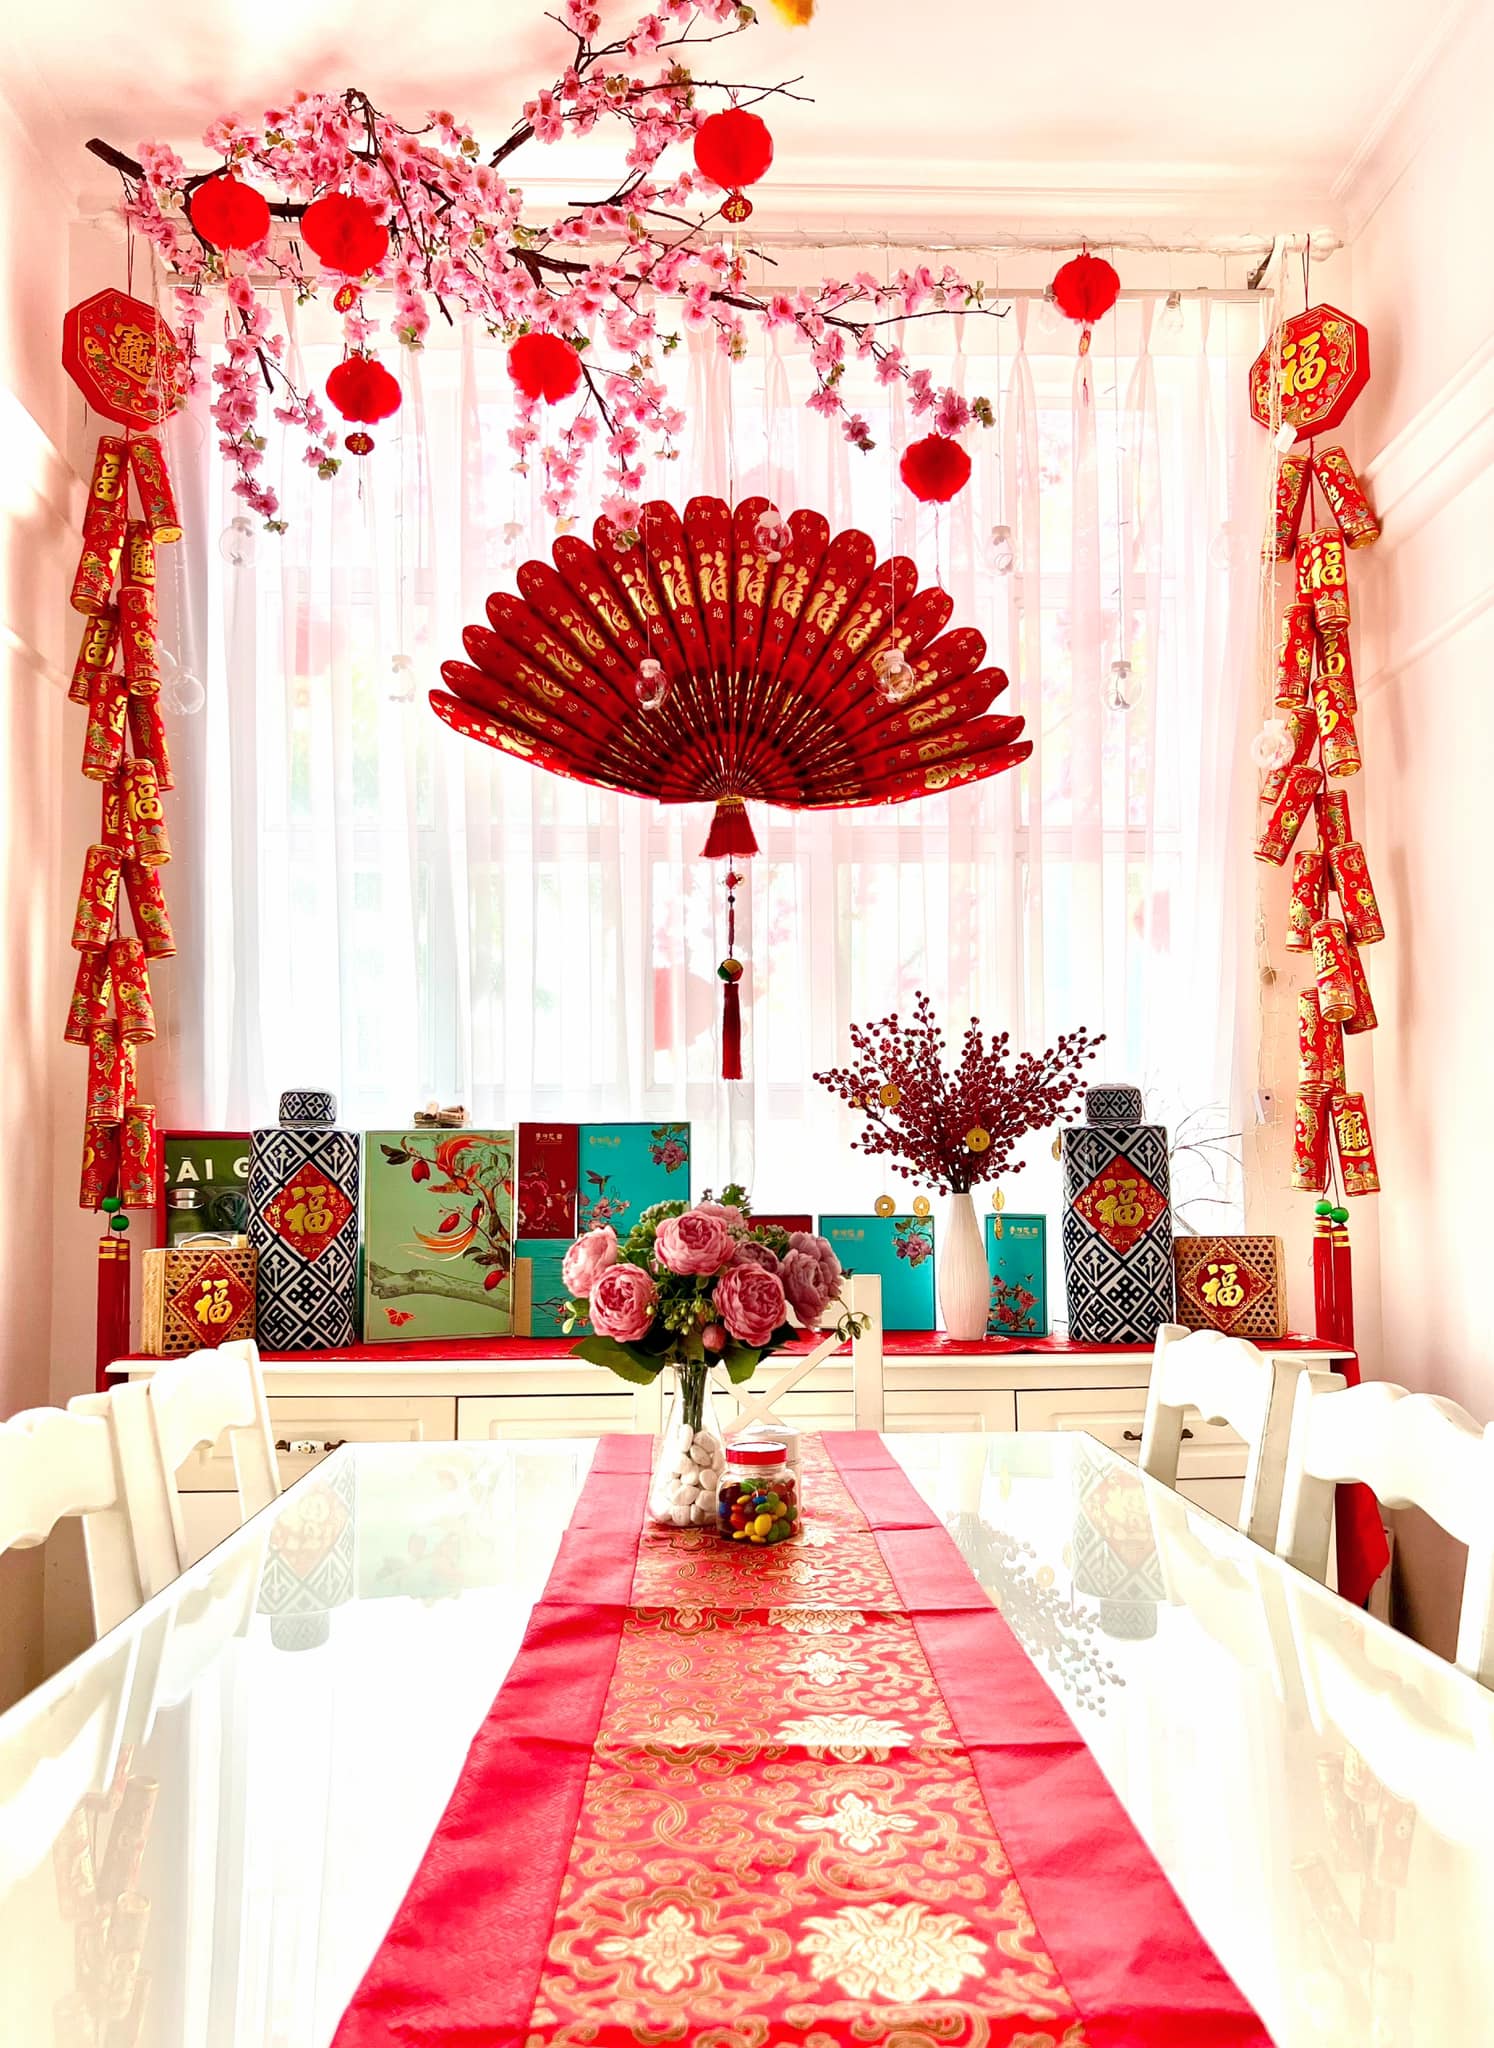 1 góc bàn ăn và cửa sổ được trang trí bằng nhiều hộp quà, pháo và chiếc quạt đỏ khổng lồ.